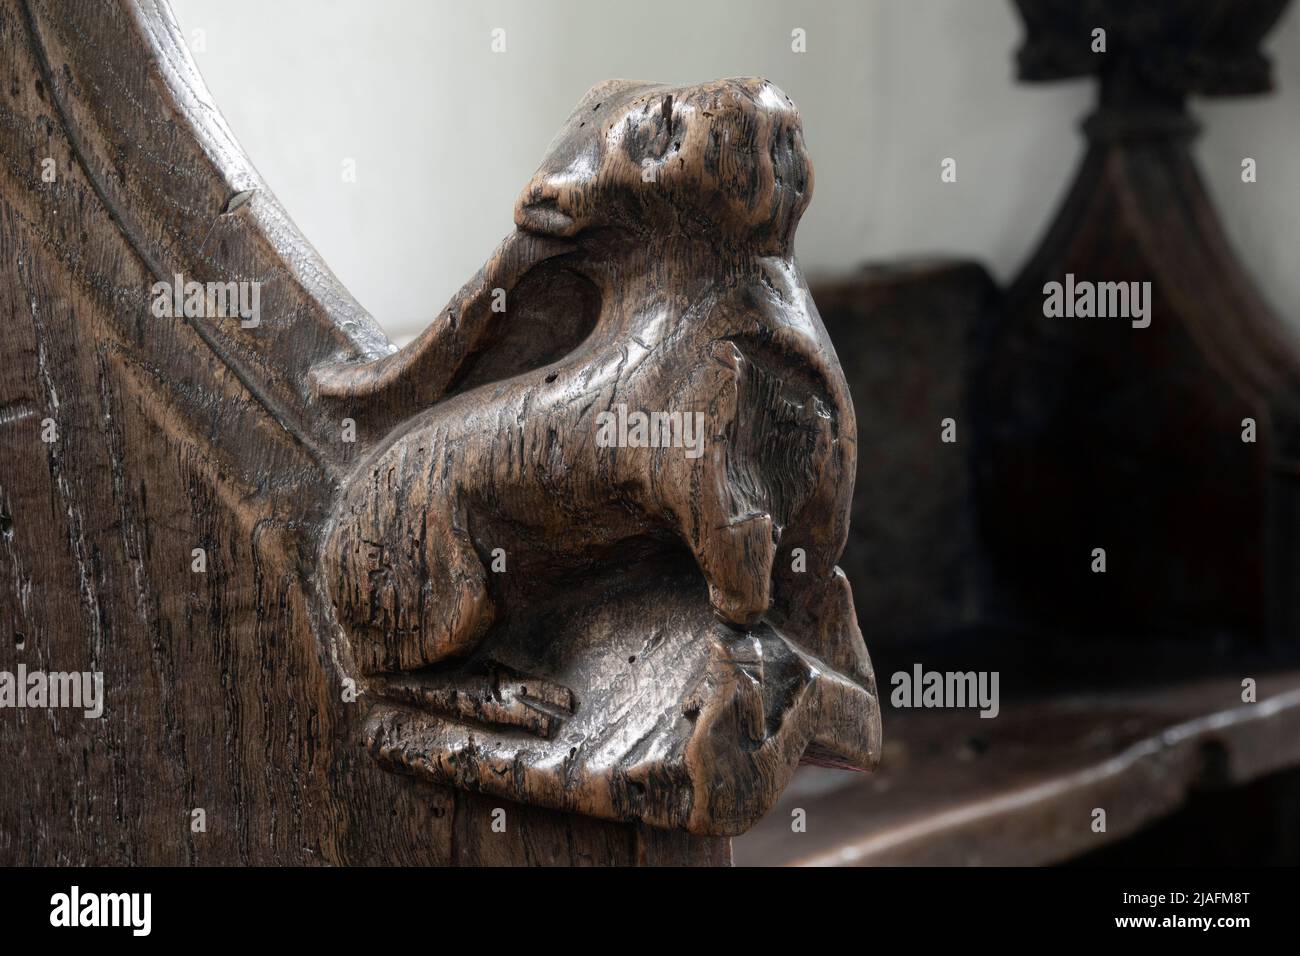 Banc en bois sculpté datant de 15th ans à l'église de la Toussaint, Brandeston, Suffolk Banque D'Images